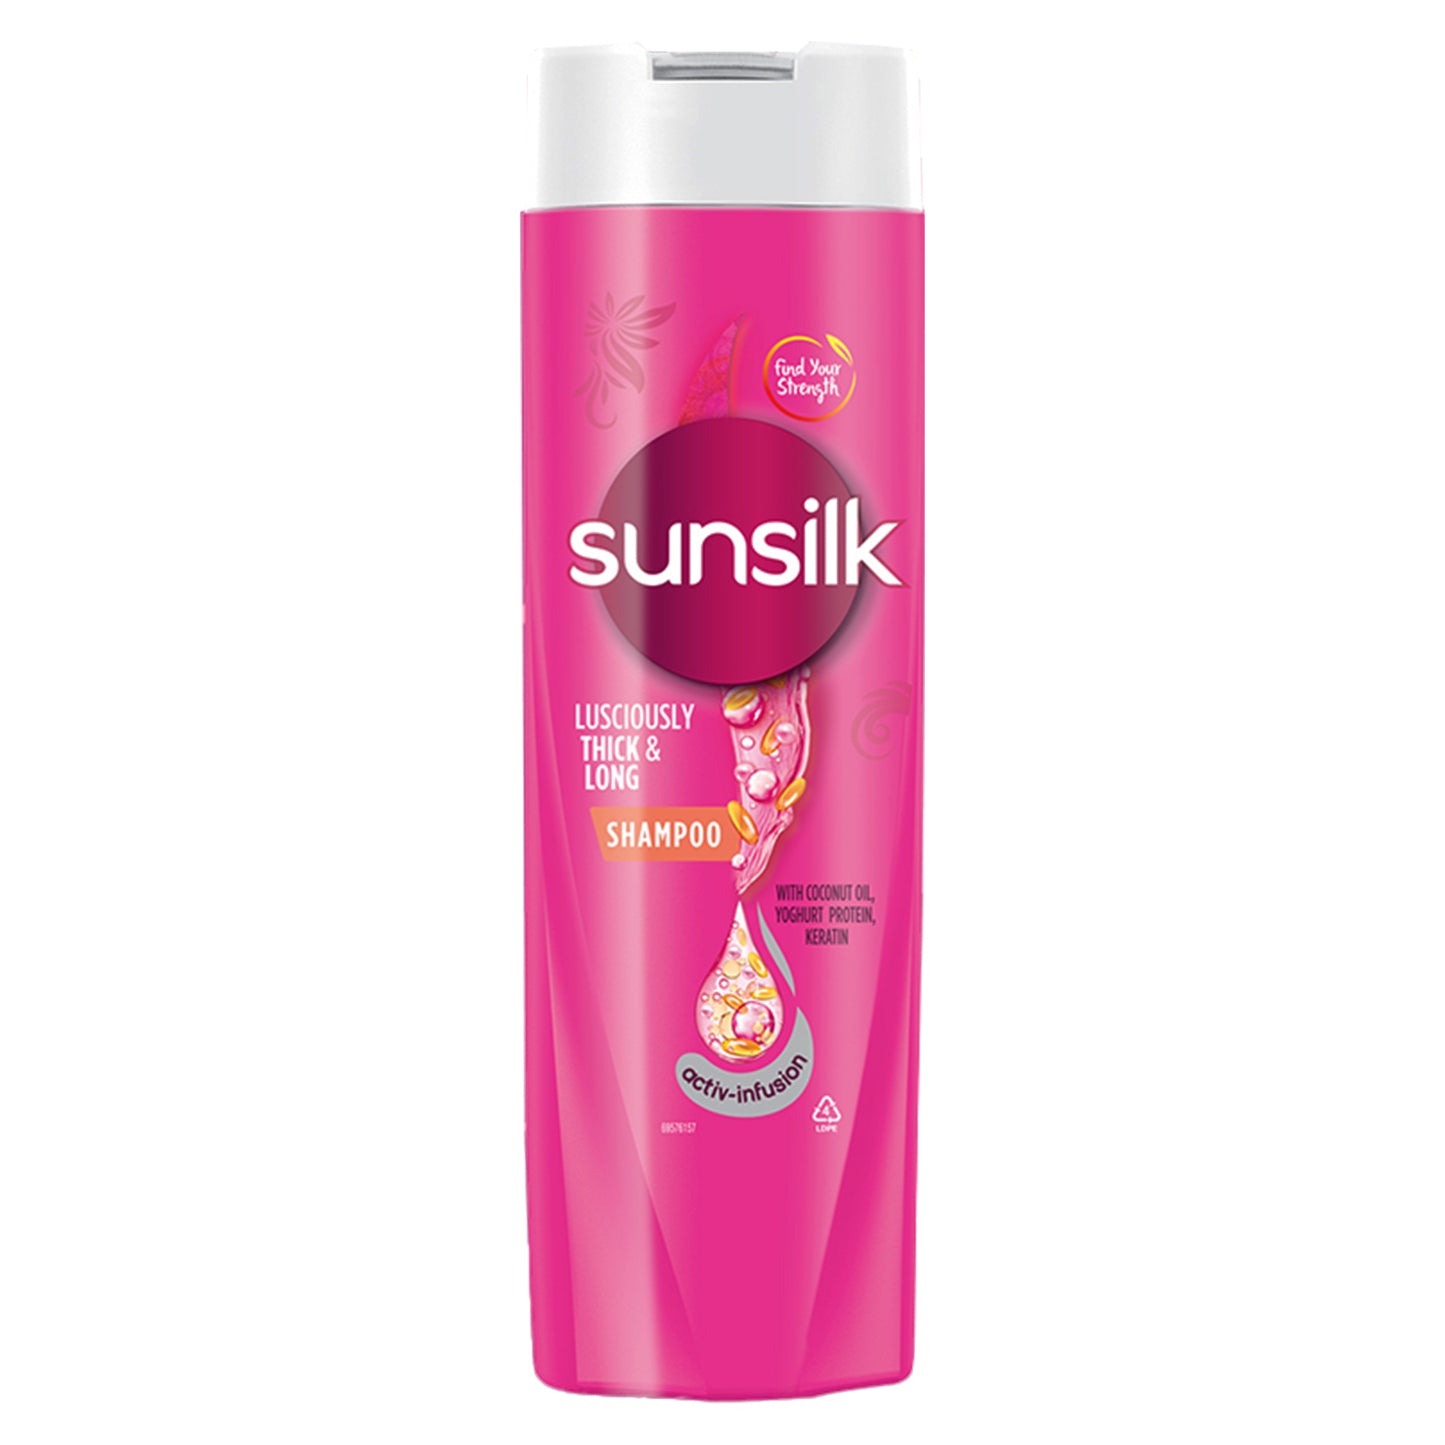 Sunsilk tyk og lang shampoo (180ml)